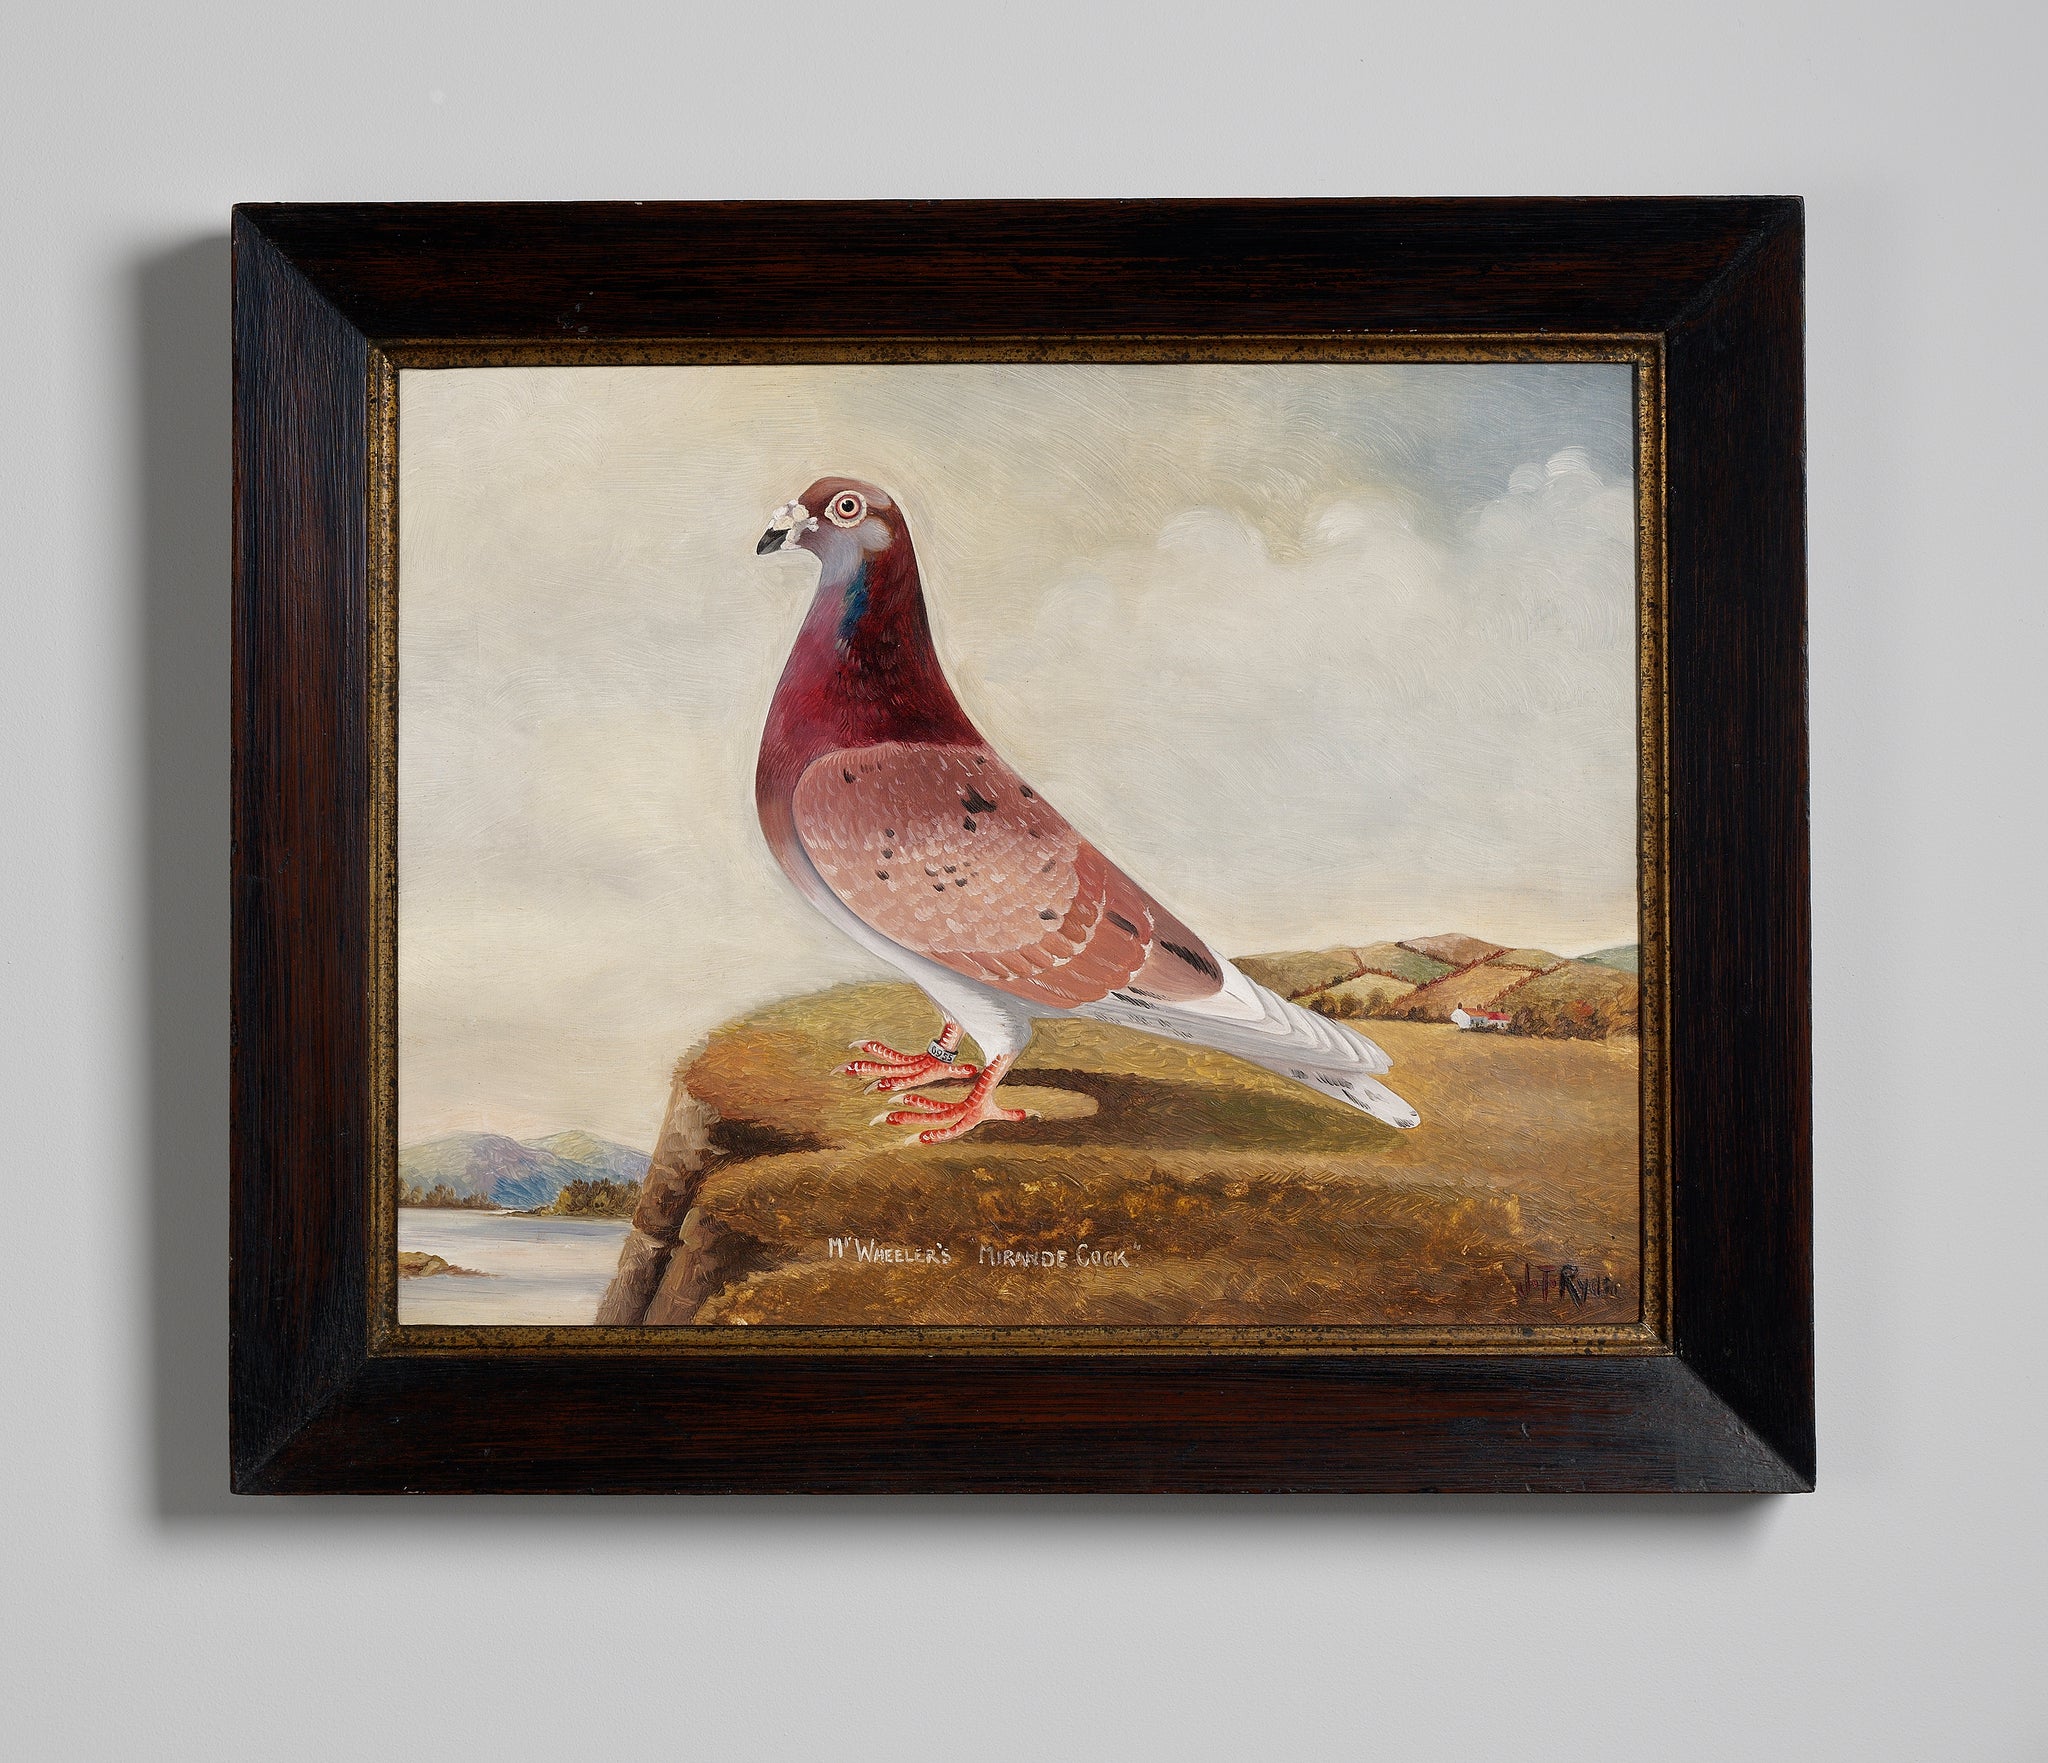 Portrait of “Mr Wheeler’s Mirande Cock” Racing Pigeon